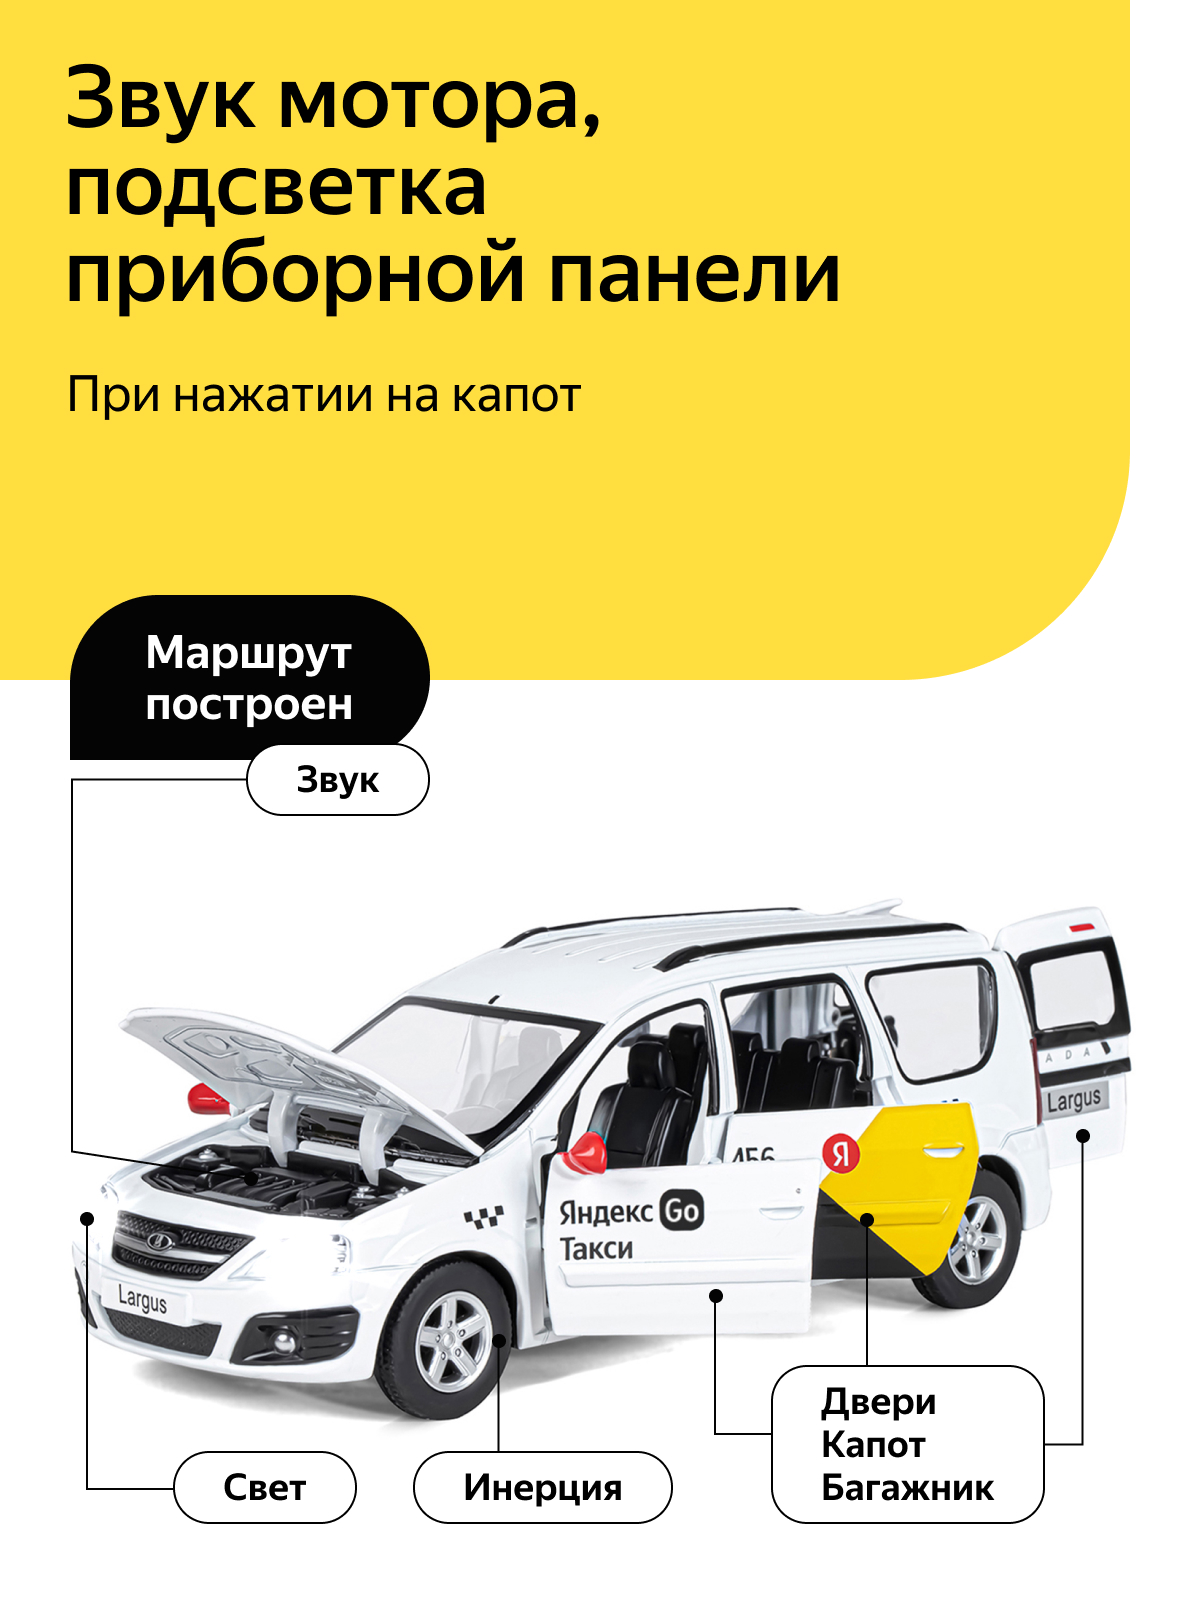 Машинка металлическая Яндекс GO LADA LARGUS 1:24 белый Озвучено Алисой JB1251343/Яндекс GO - фото 2